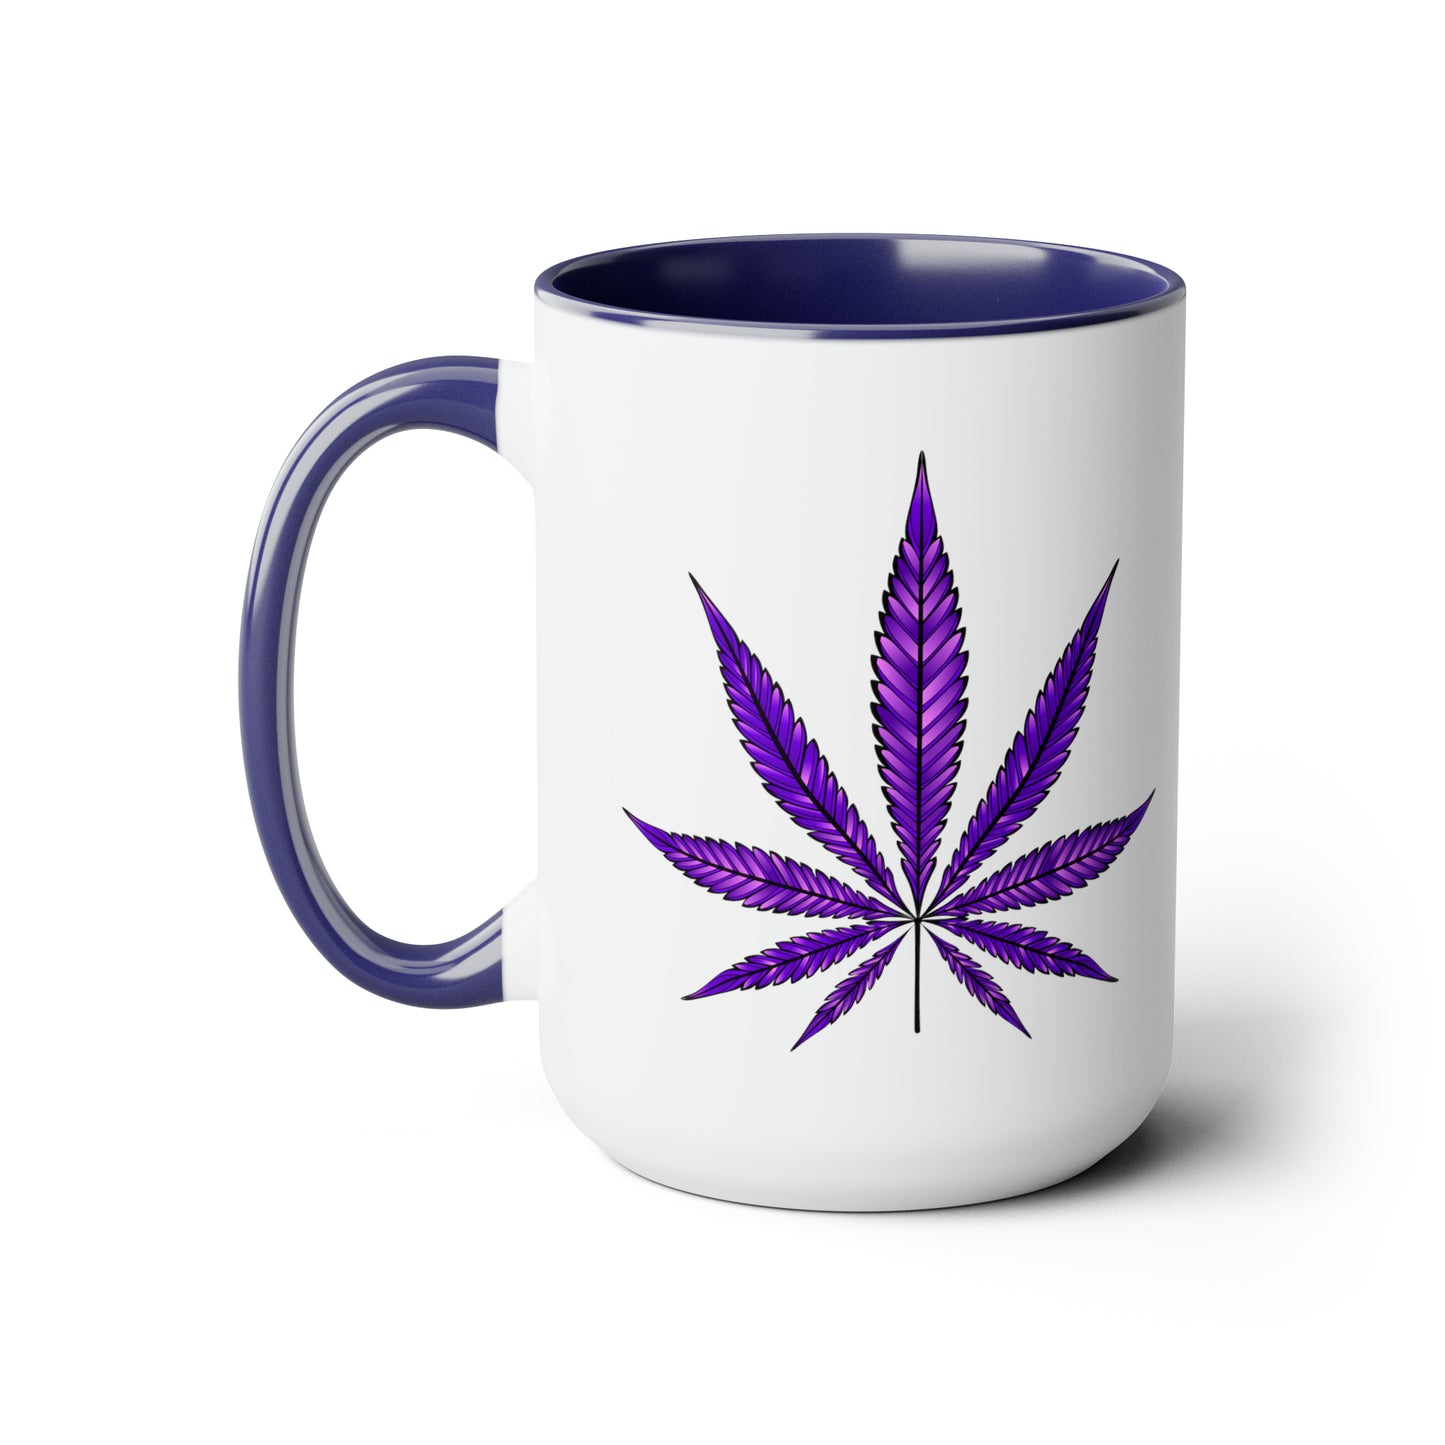 Purple Haze Marijuana Coffee Mug with a Purple Haze Marijuana leaf design on its side, featuring a blue interior and handle, isolated on a white background.